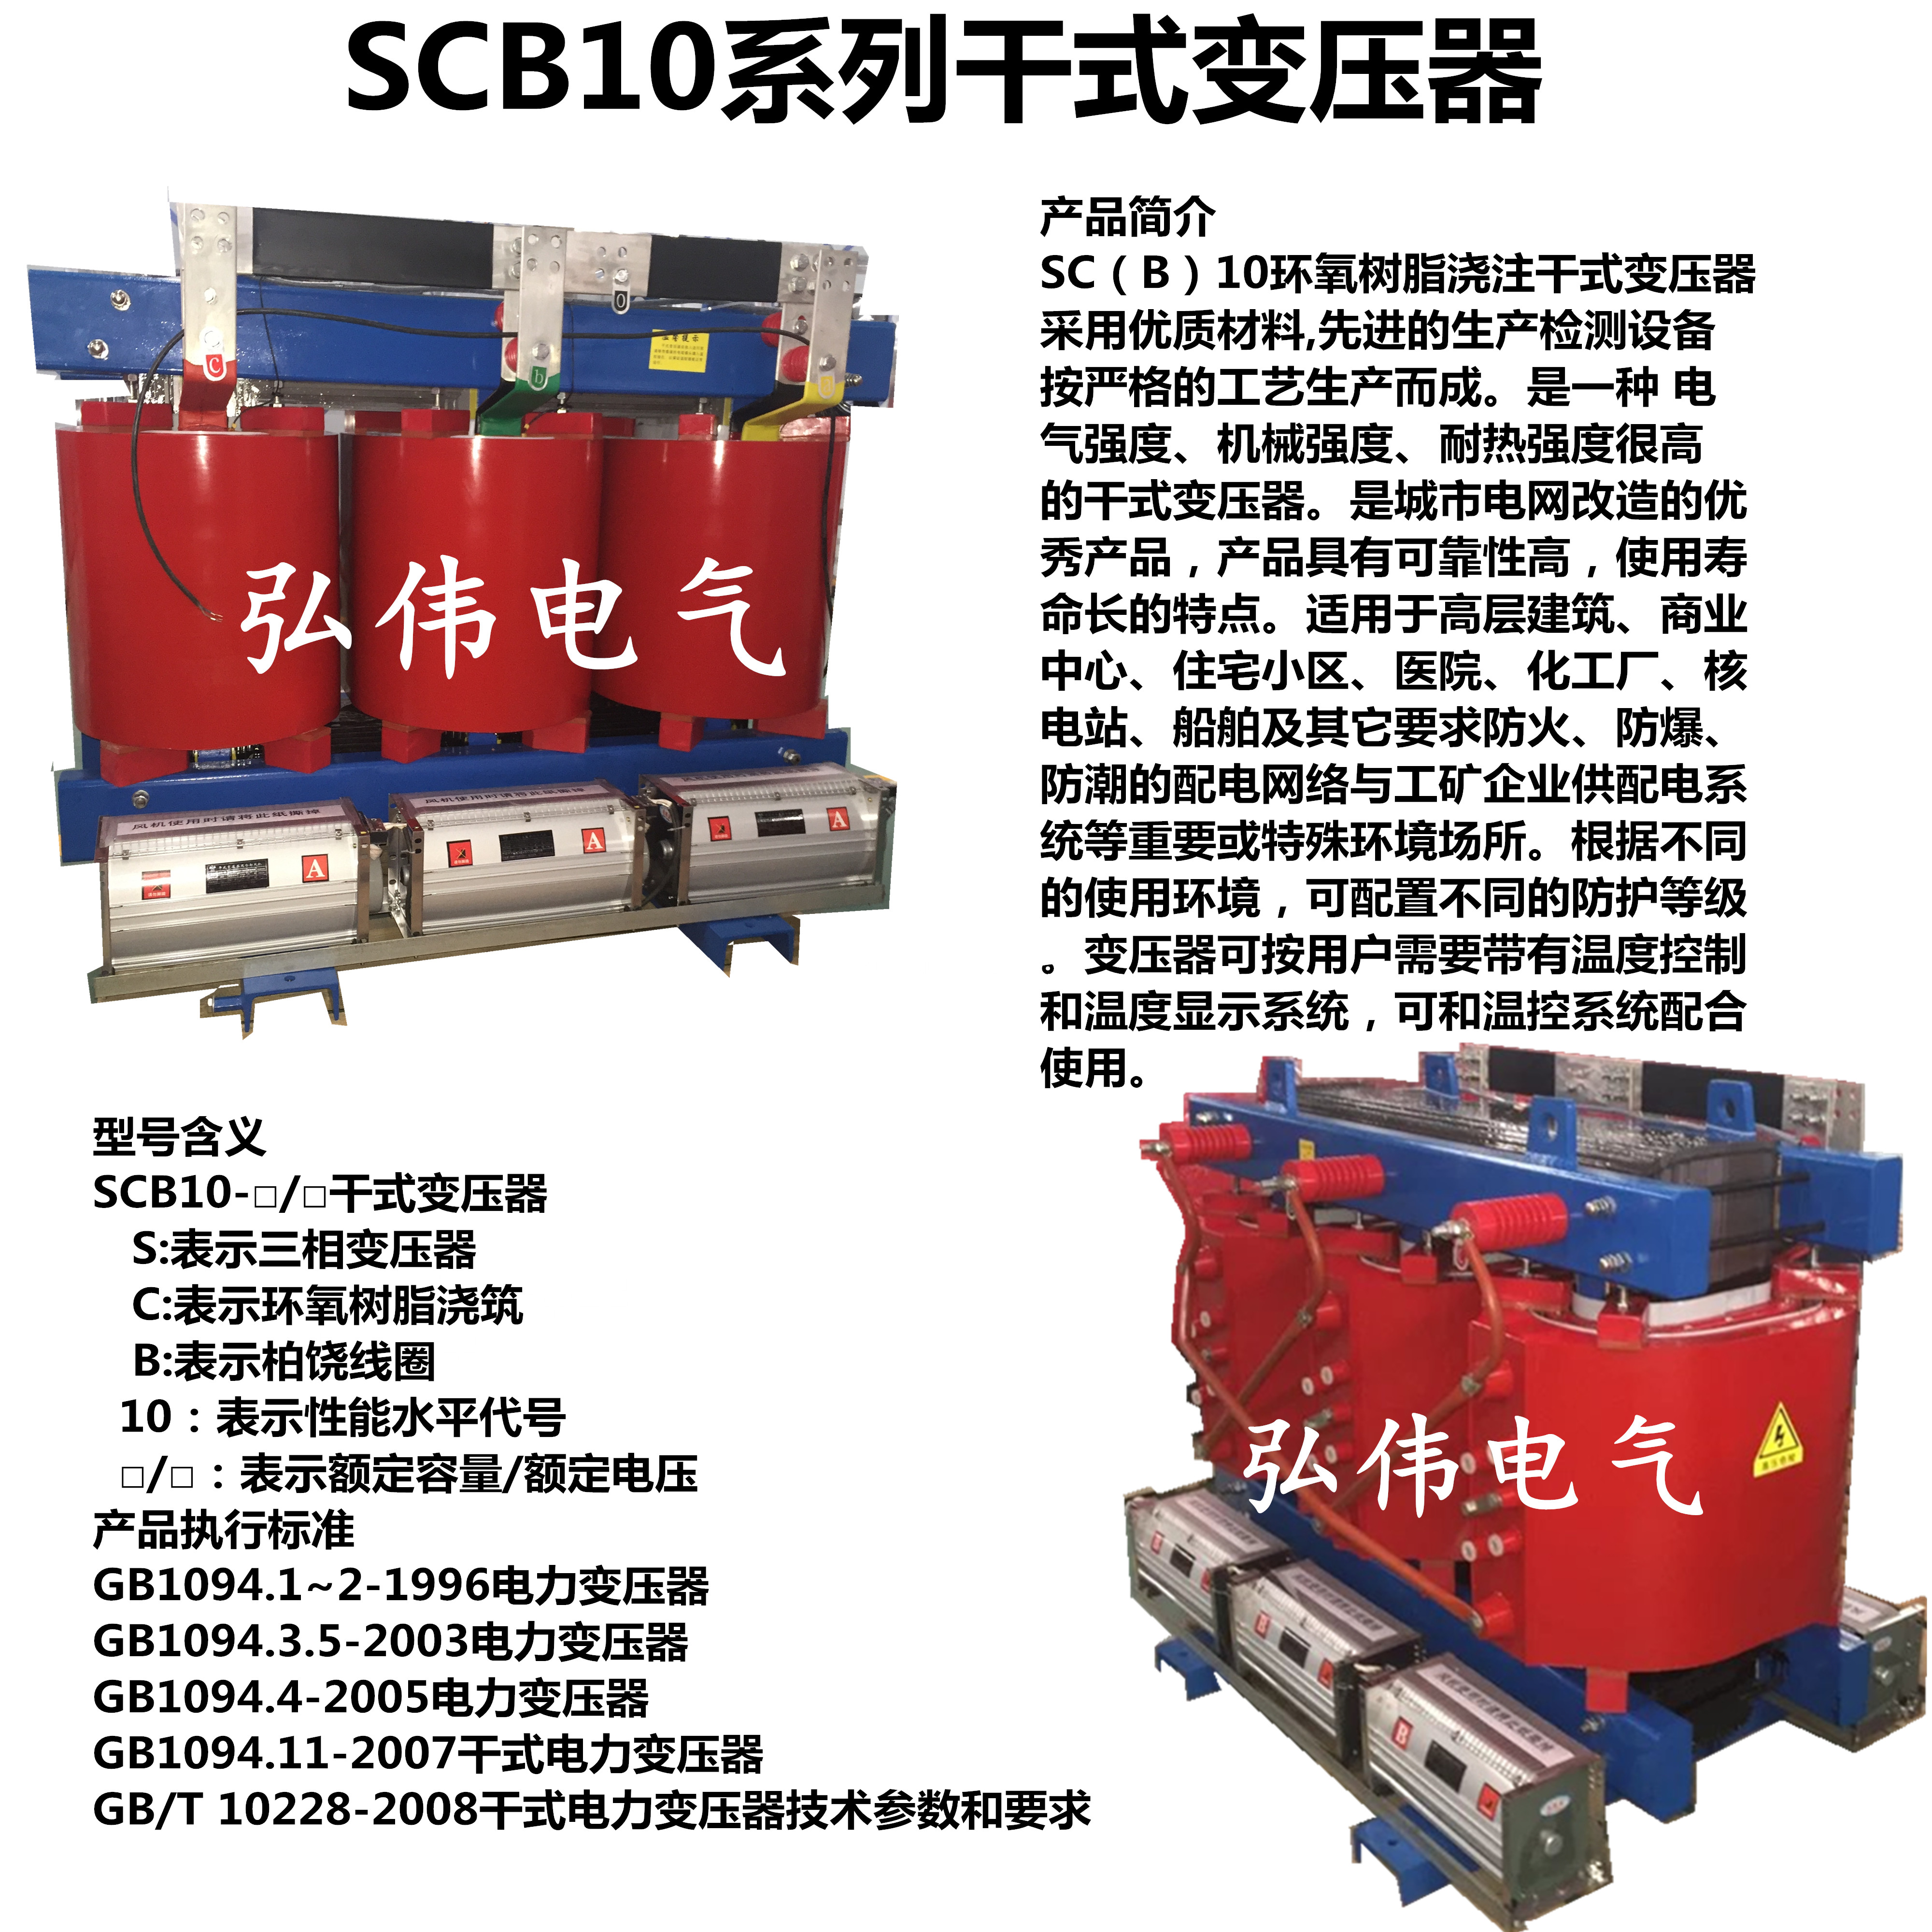 SCB10-630KVA干式变压器价格 SCB10-630KVA,630KVA干式变压器,干式变压器,干式变压器价格,SCB10-630KVA